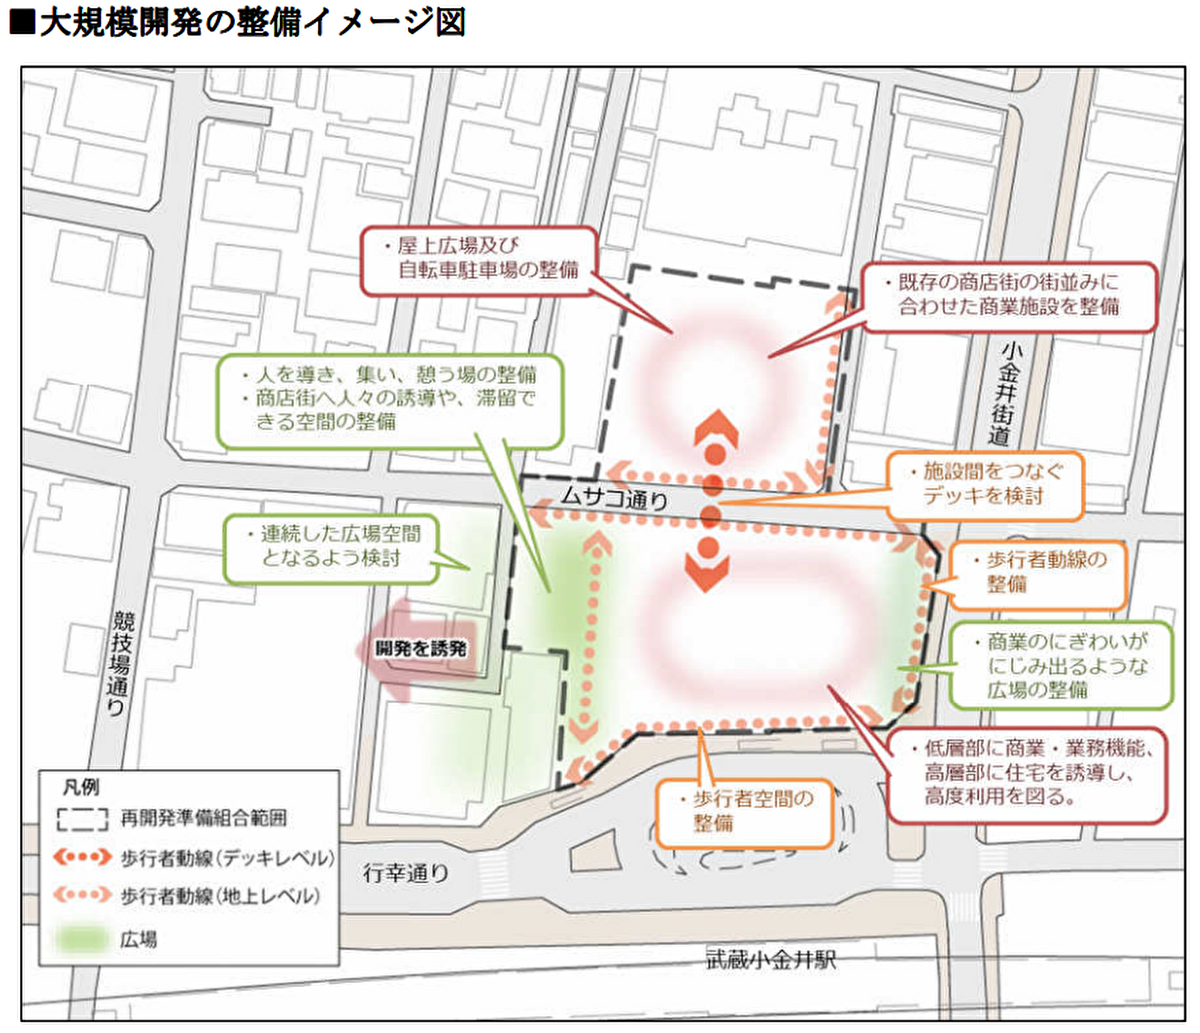 武蔵小金井駅北口 大規模開発の整備イメージ図